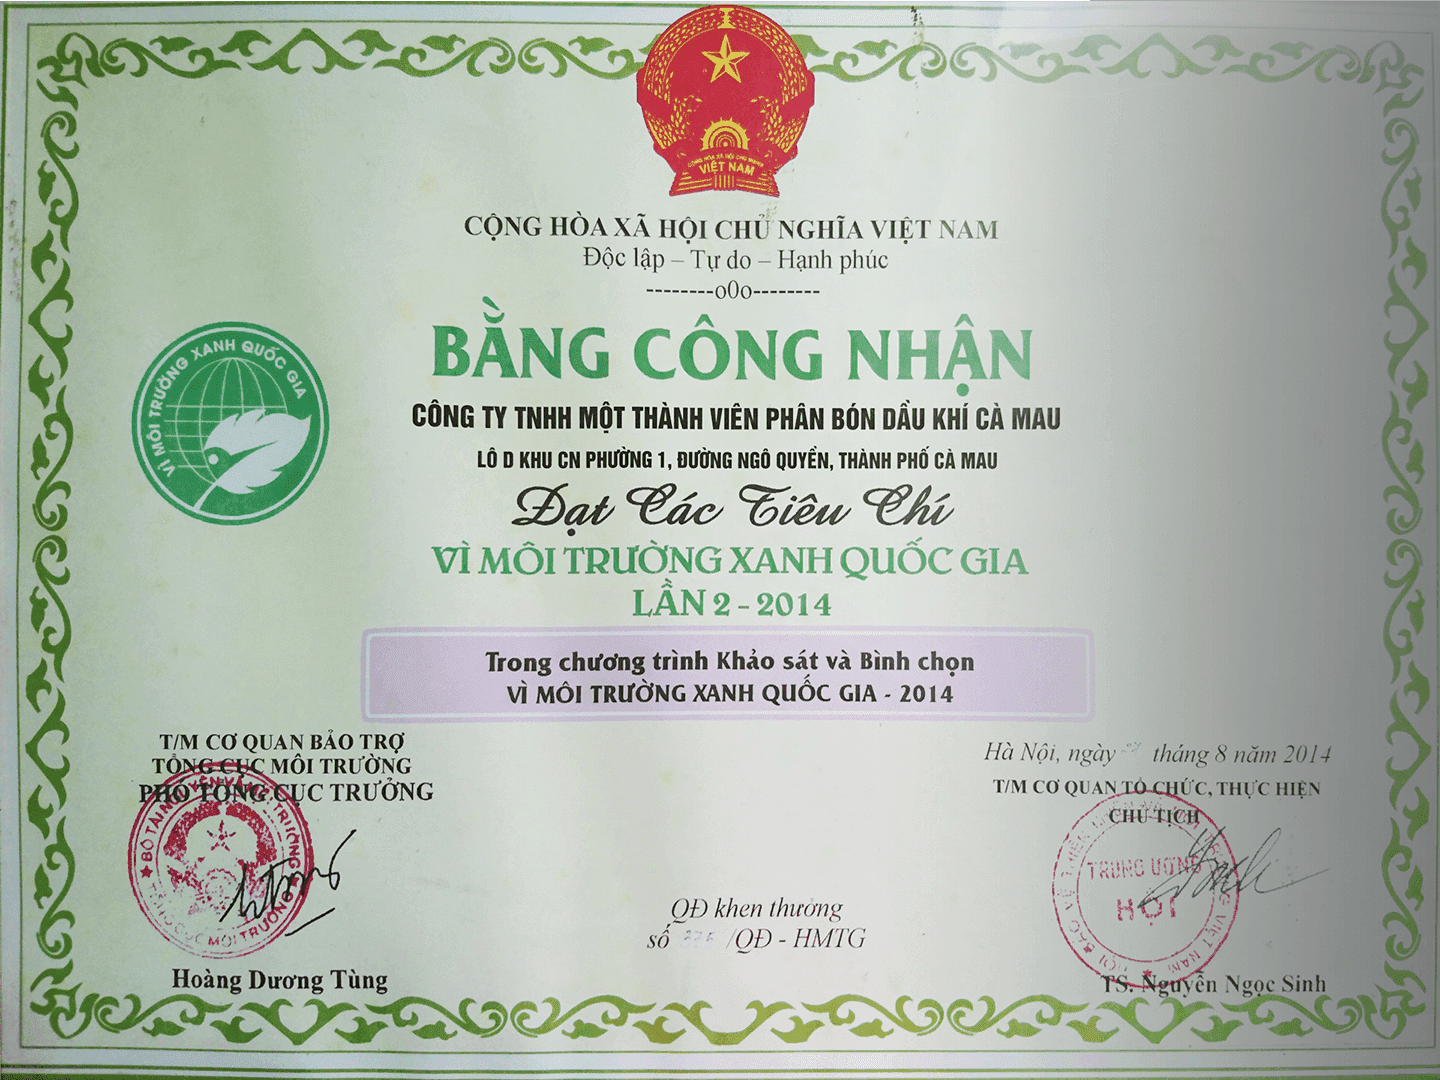 Bằng công nhận "Vì môi trường xanh Quốc gia" lần 2 năm 2014